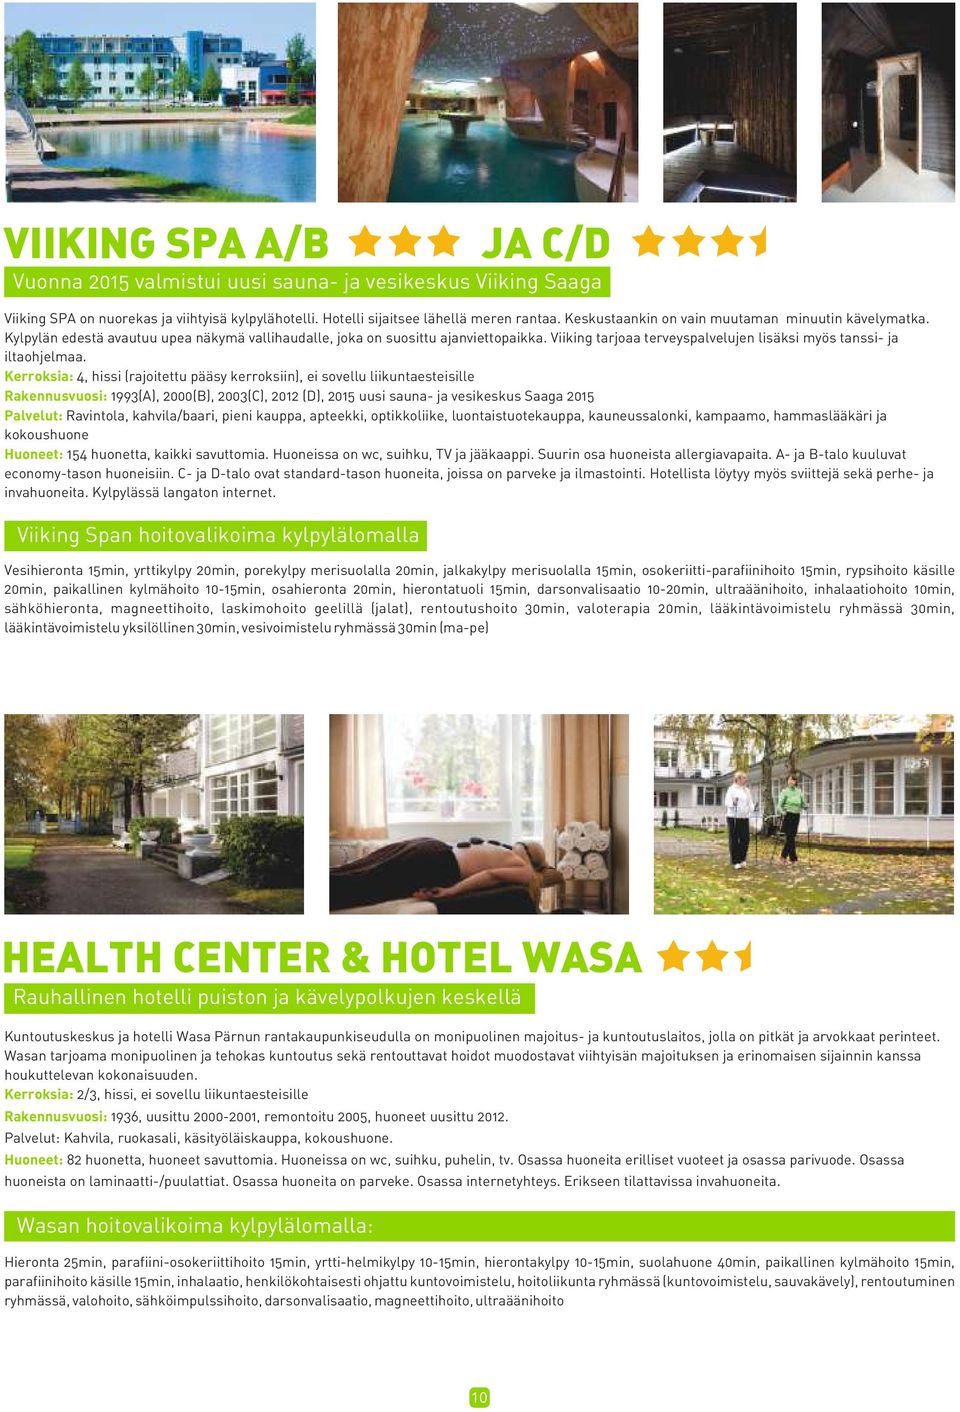 Viiking tarjoaa terveyspalvelujen lisäksi myös tanssi- ja iltaohjelmaa.